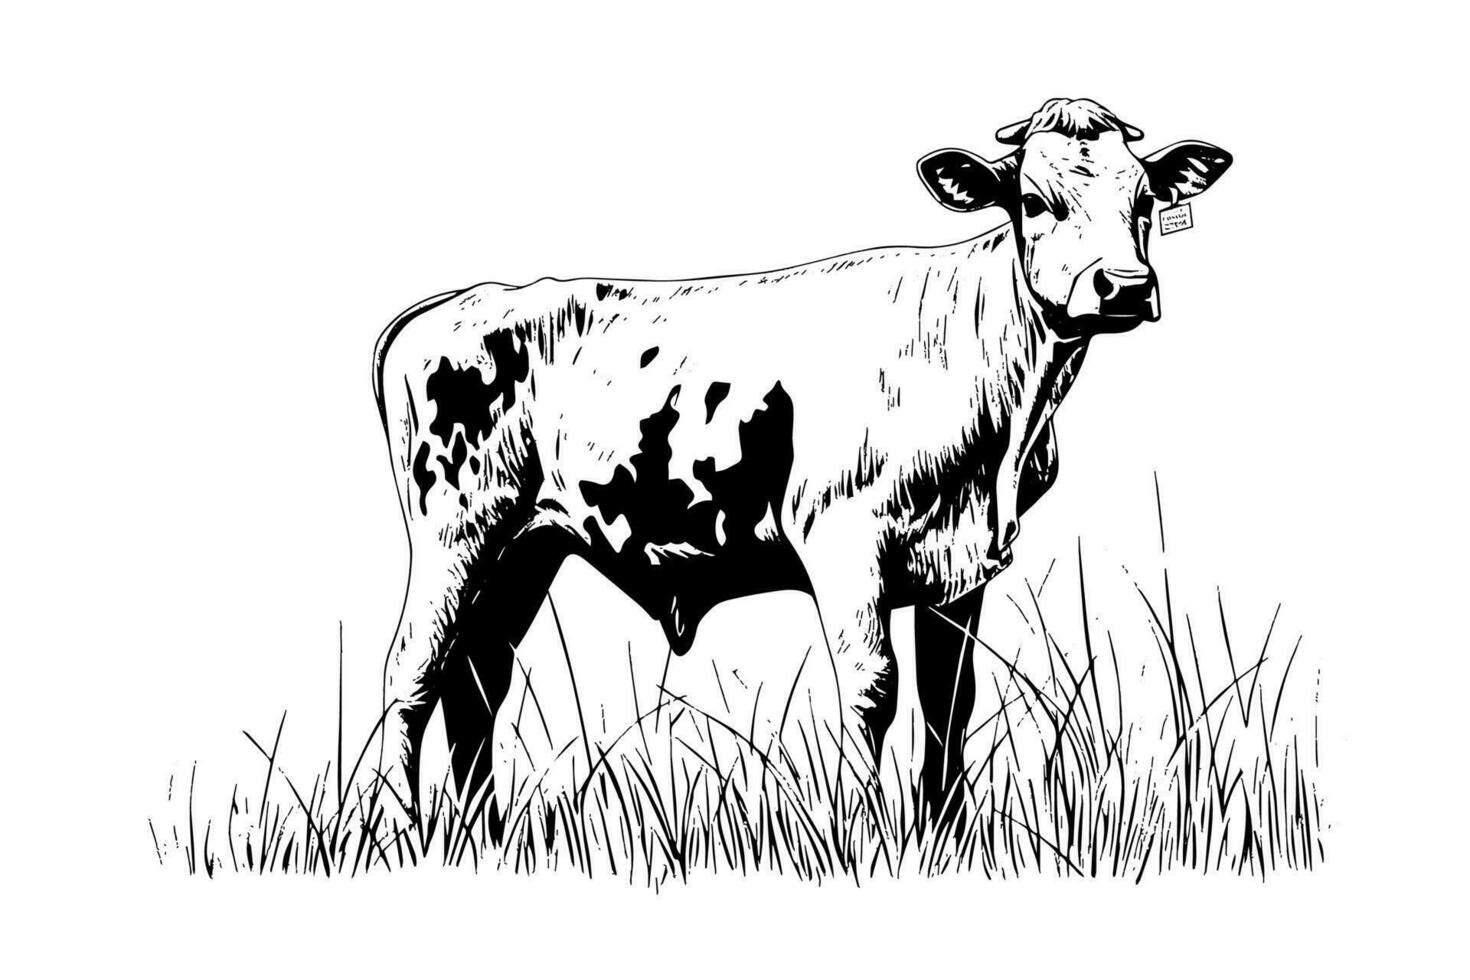 mucca sfiora nel il campo. vettore mano disegnato incisione stile illustrazione.